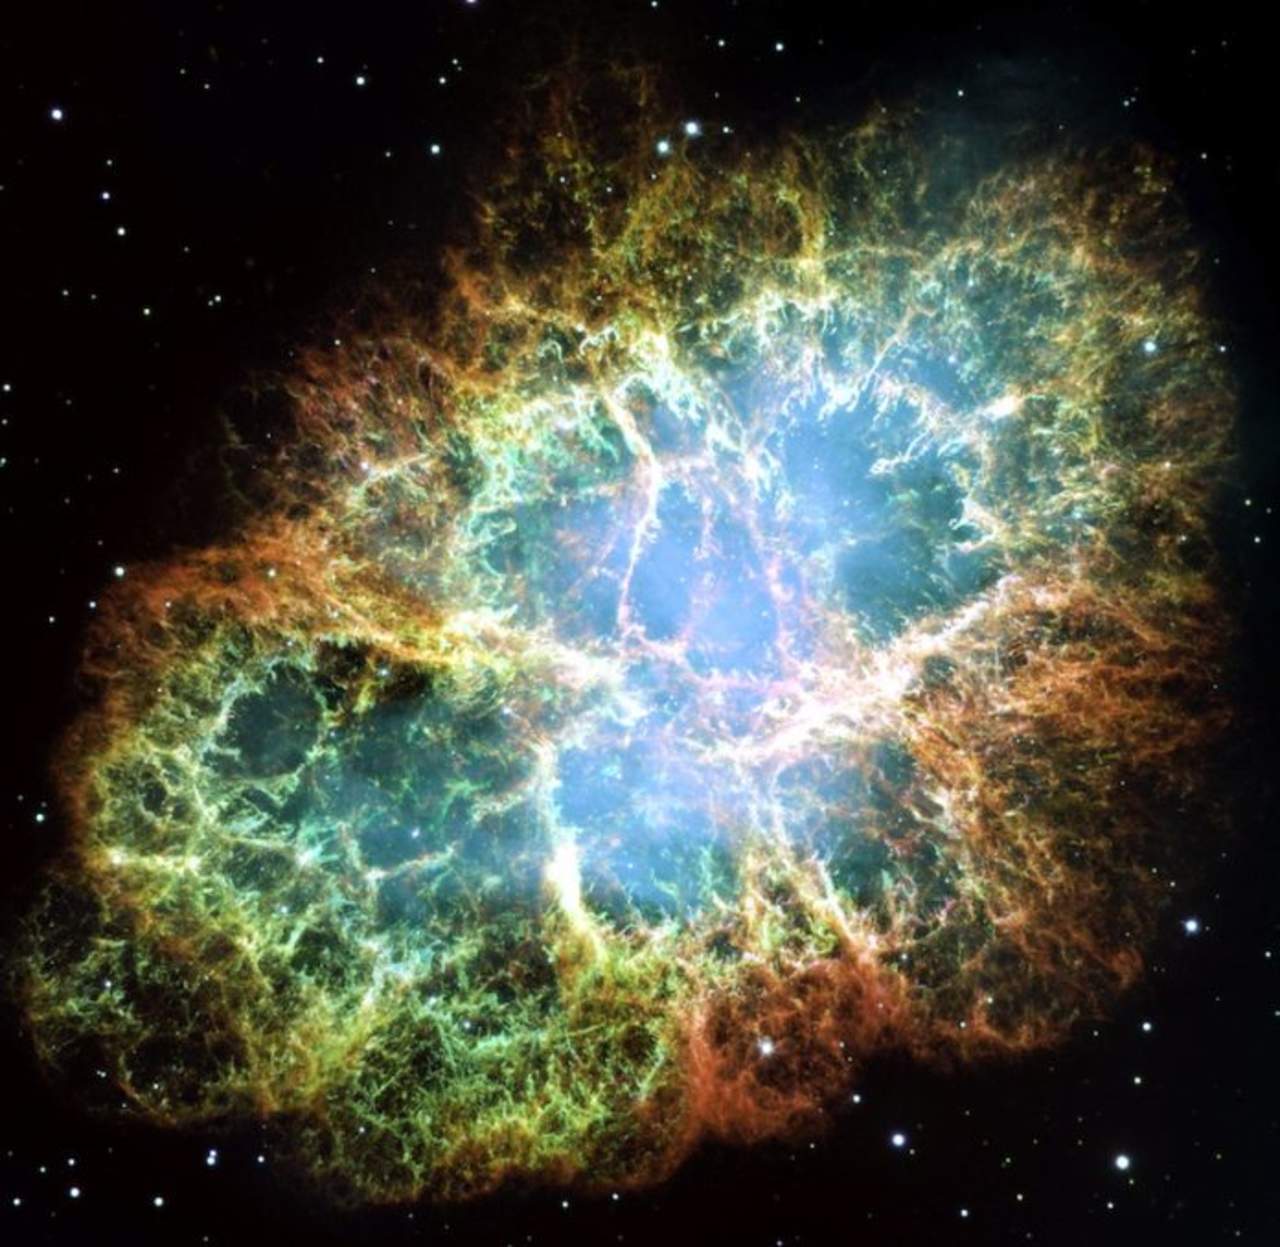 El centro de esta nebulosa, catalogado como un ejemplo de física extrema en el espacio, libera ampollas de radiación 30 veces por segundo de manera precisa. (ESPECIAL)